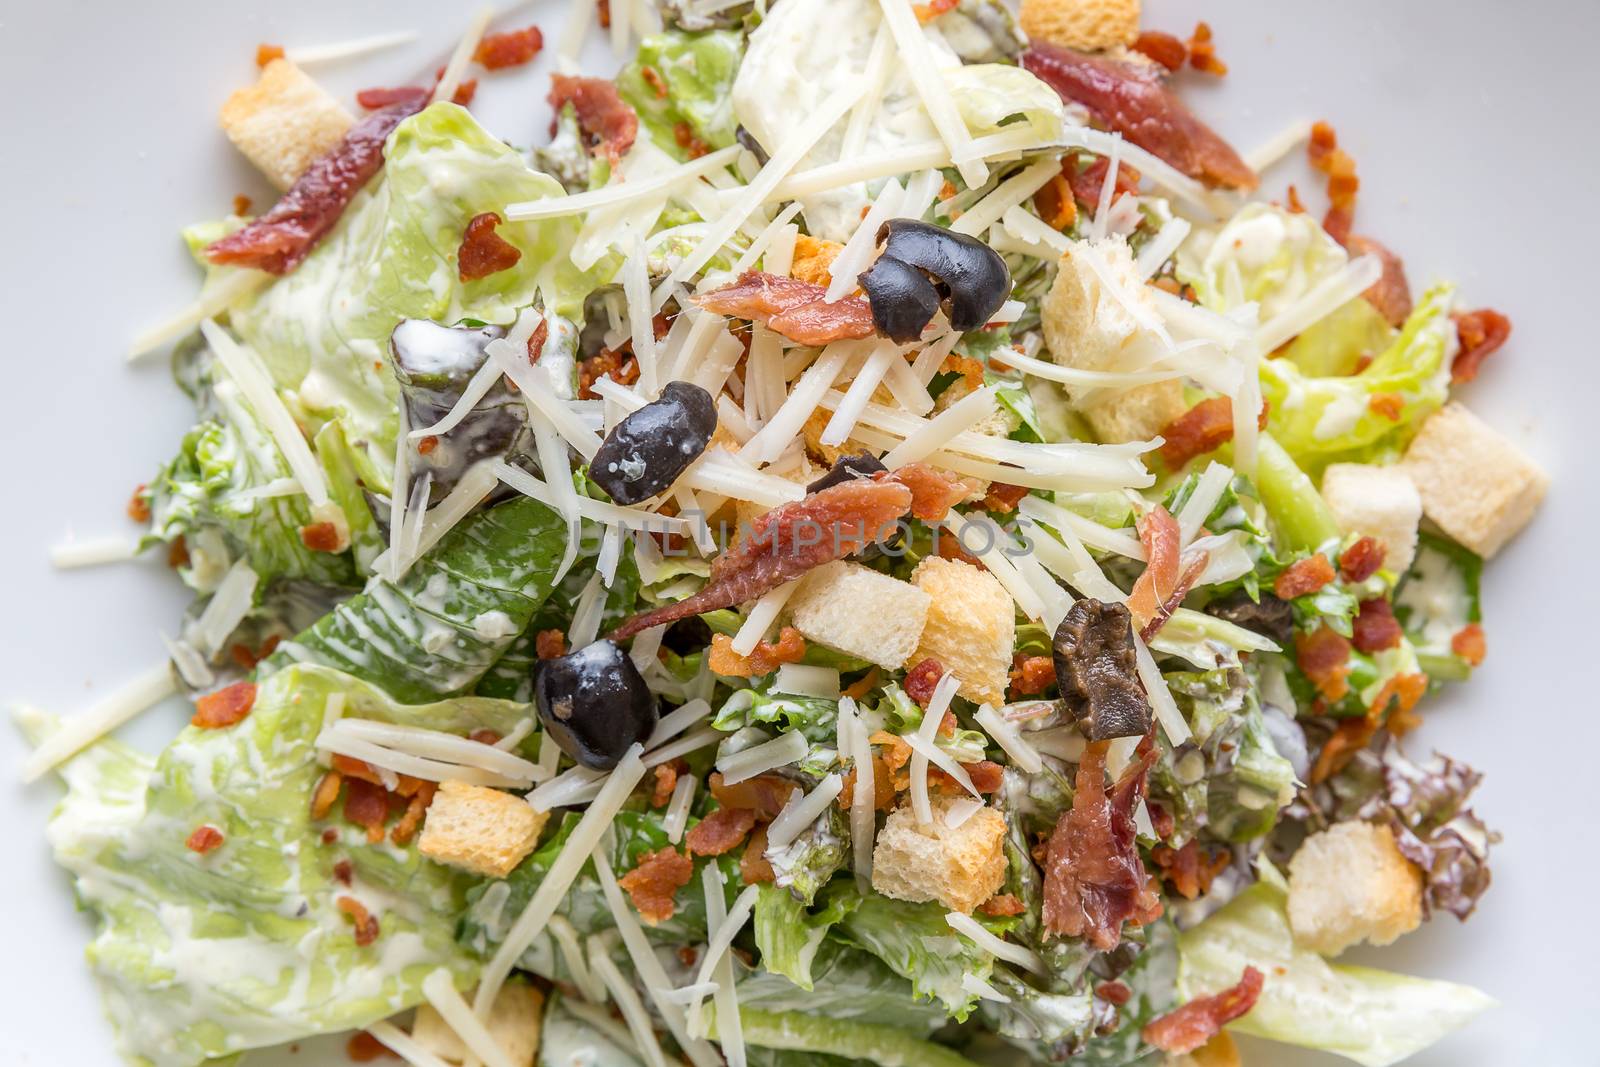 Caesar salad by vichie81